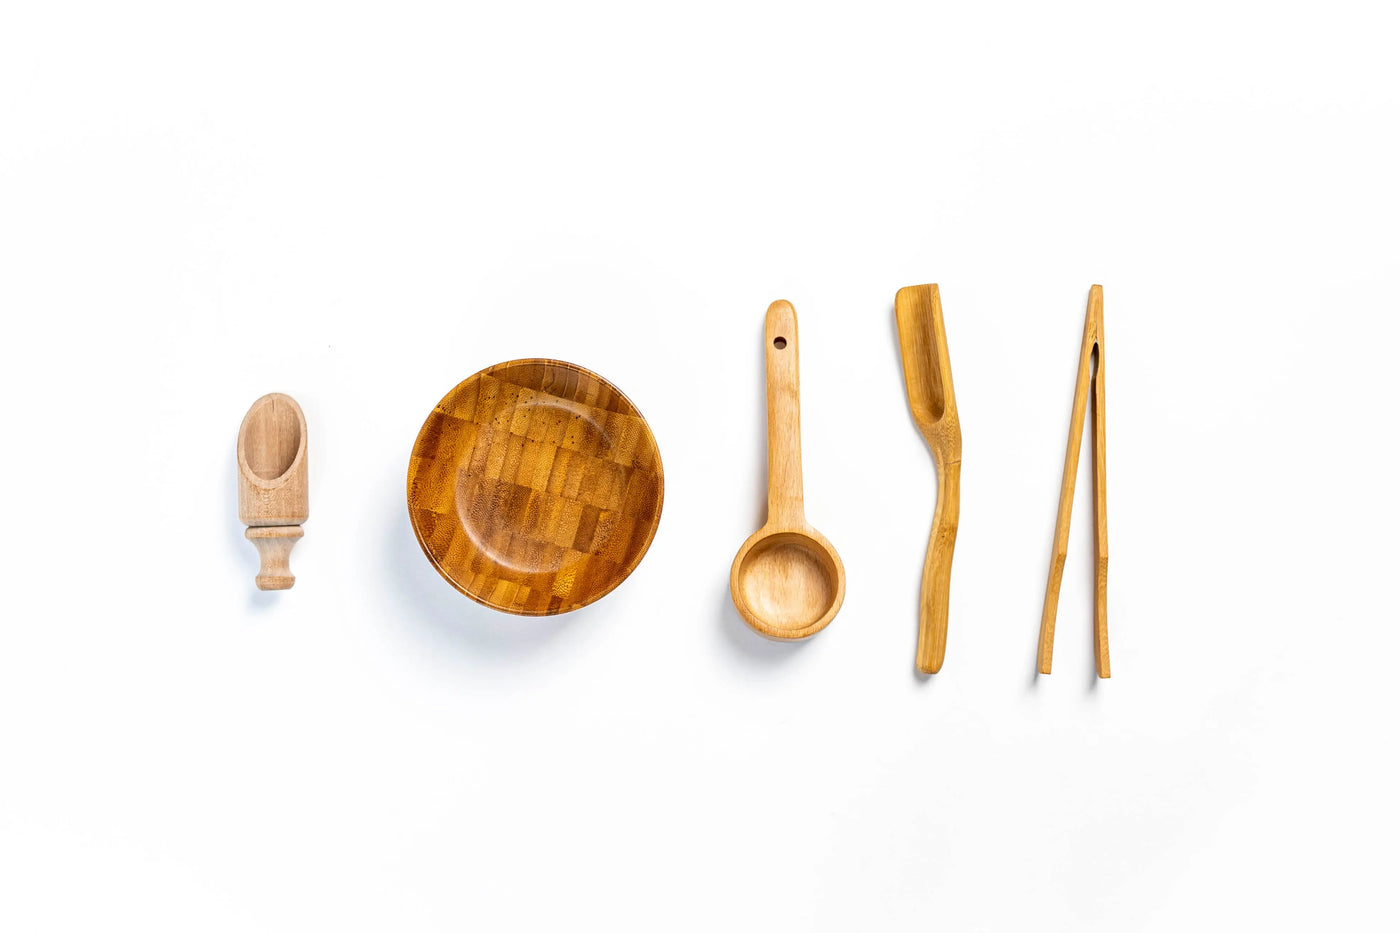 Wooden Sensory Bin Tools Eduspark Toys